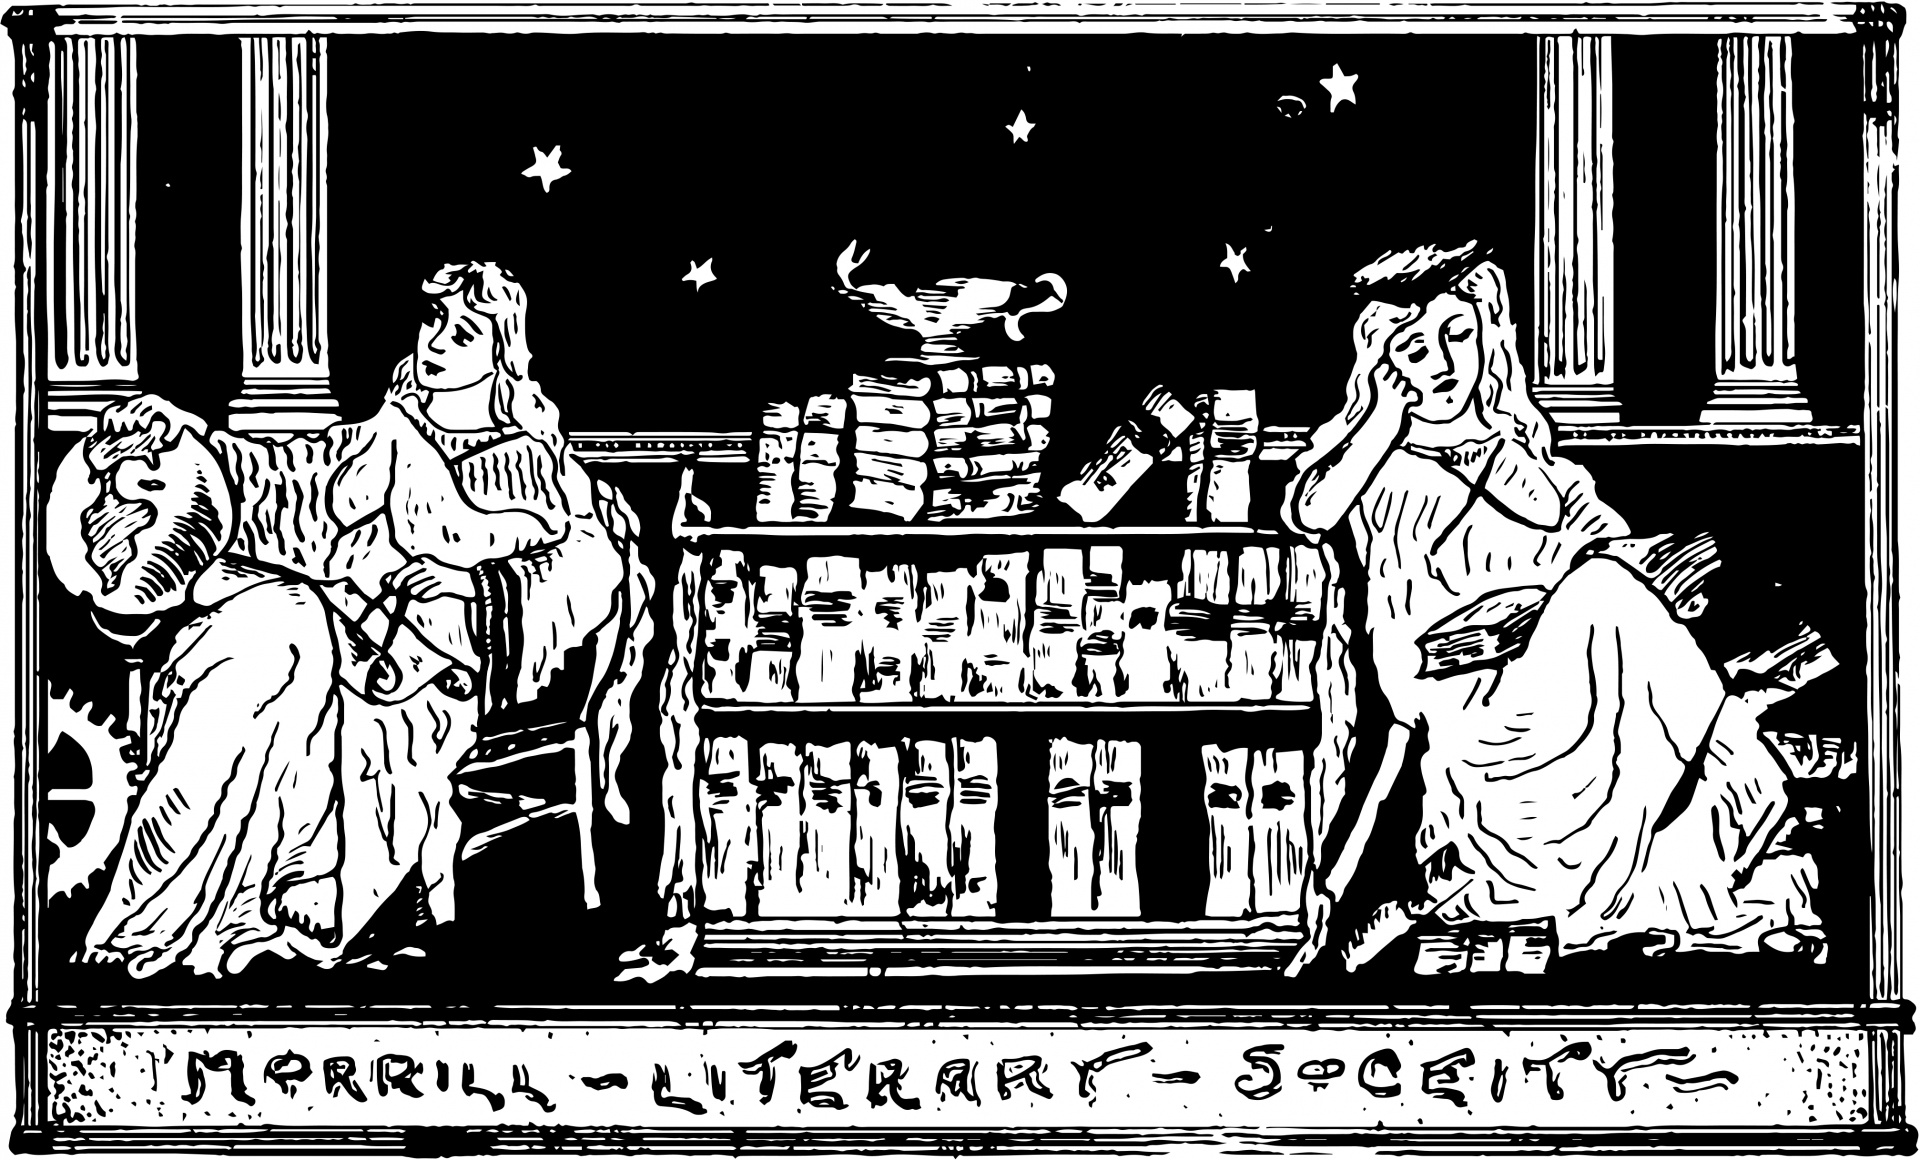 Literary Society